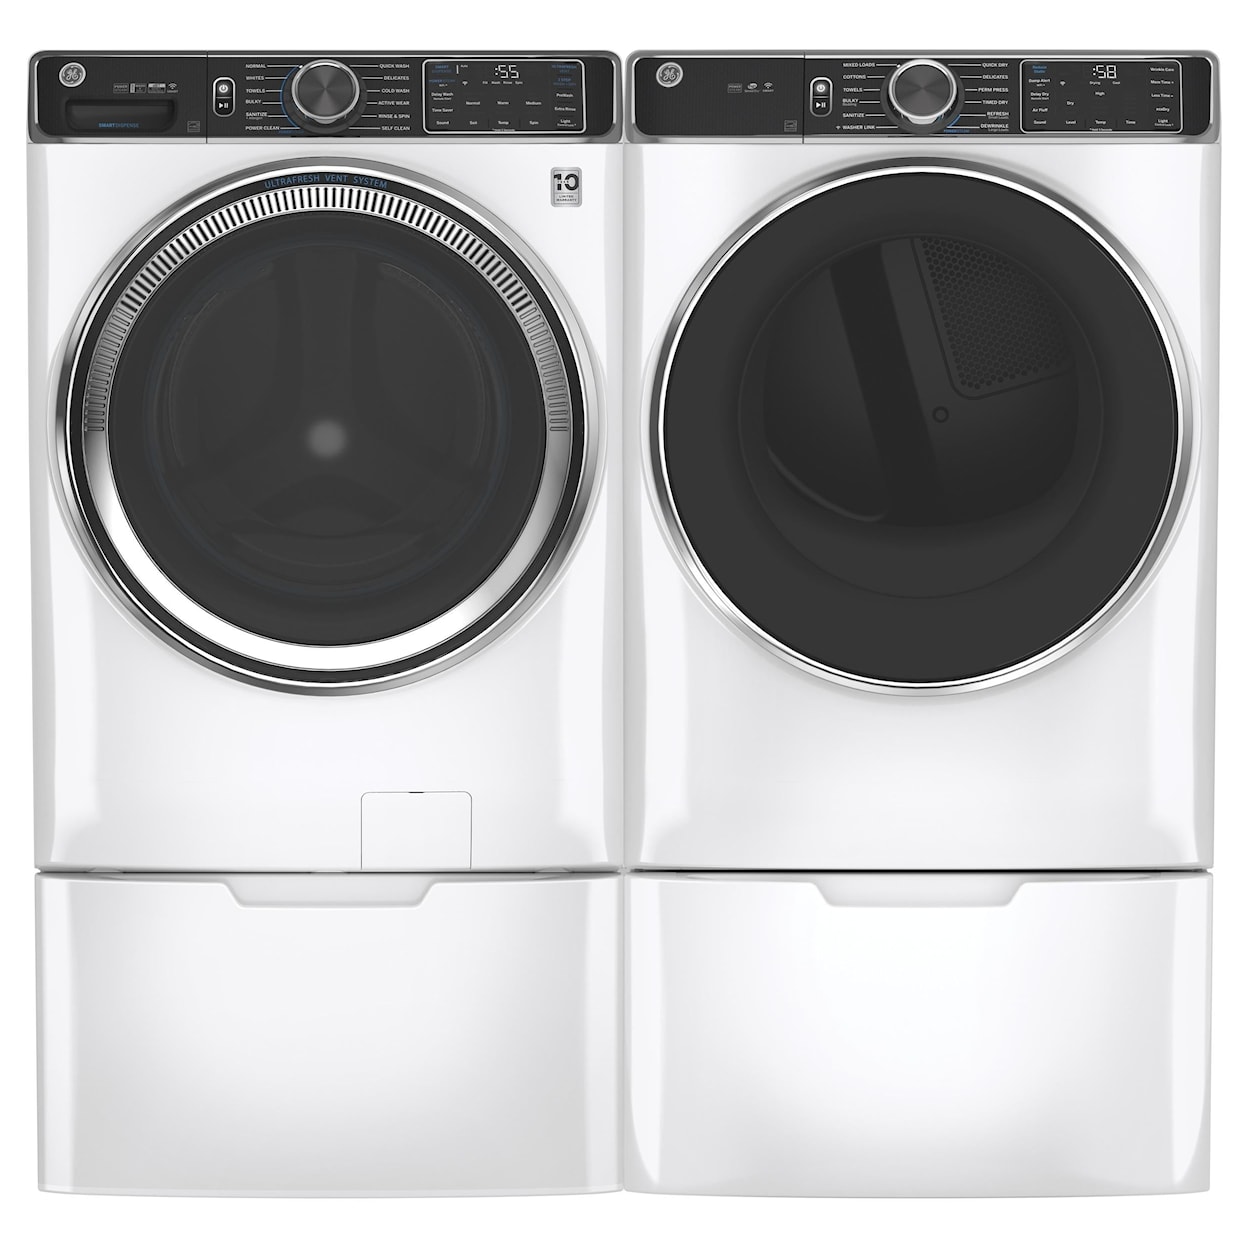 GE Appliances Laundry Washer